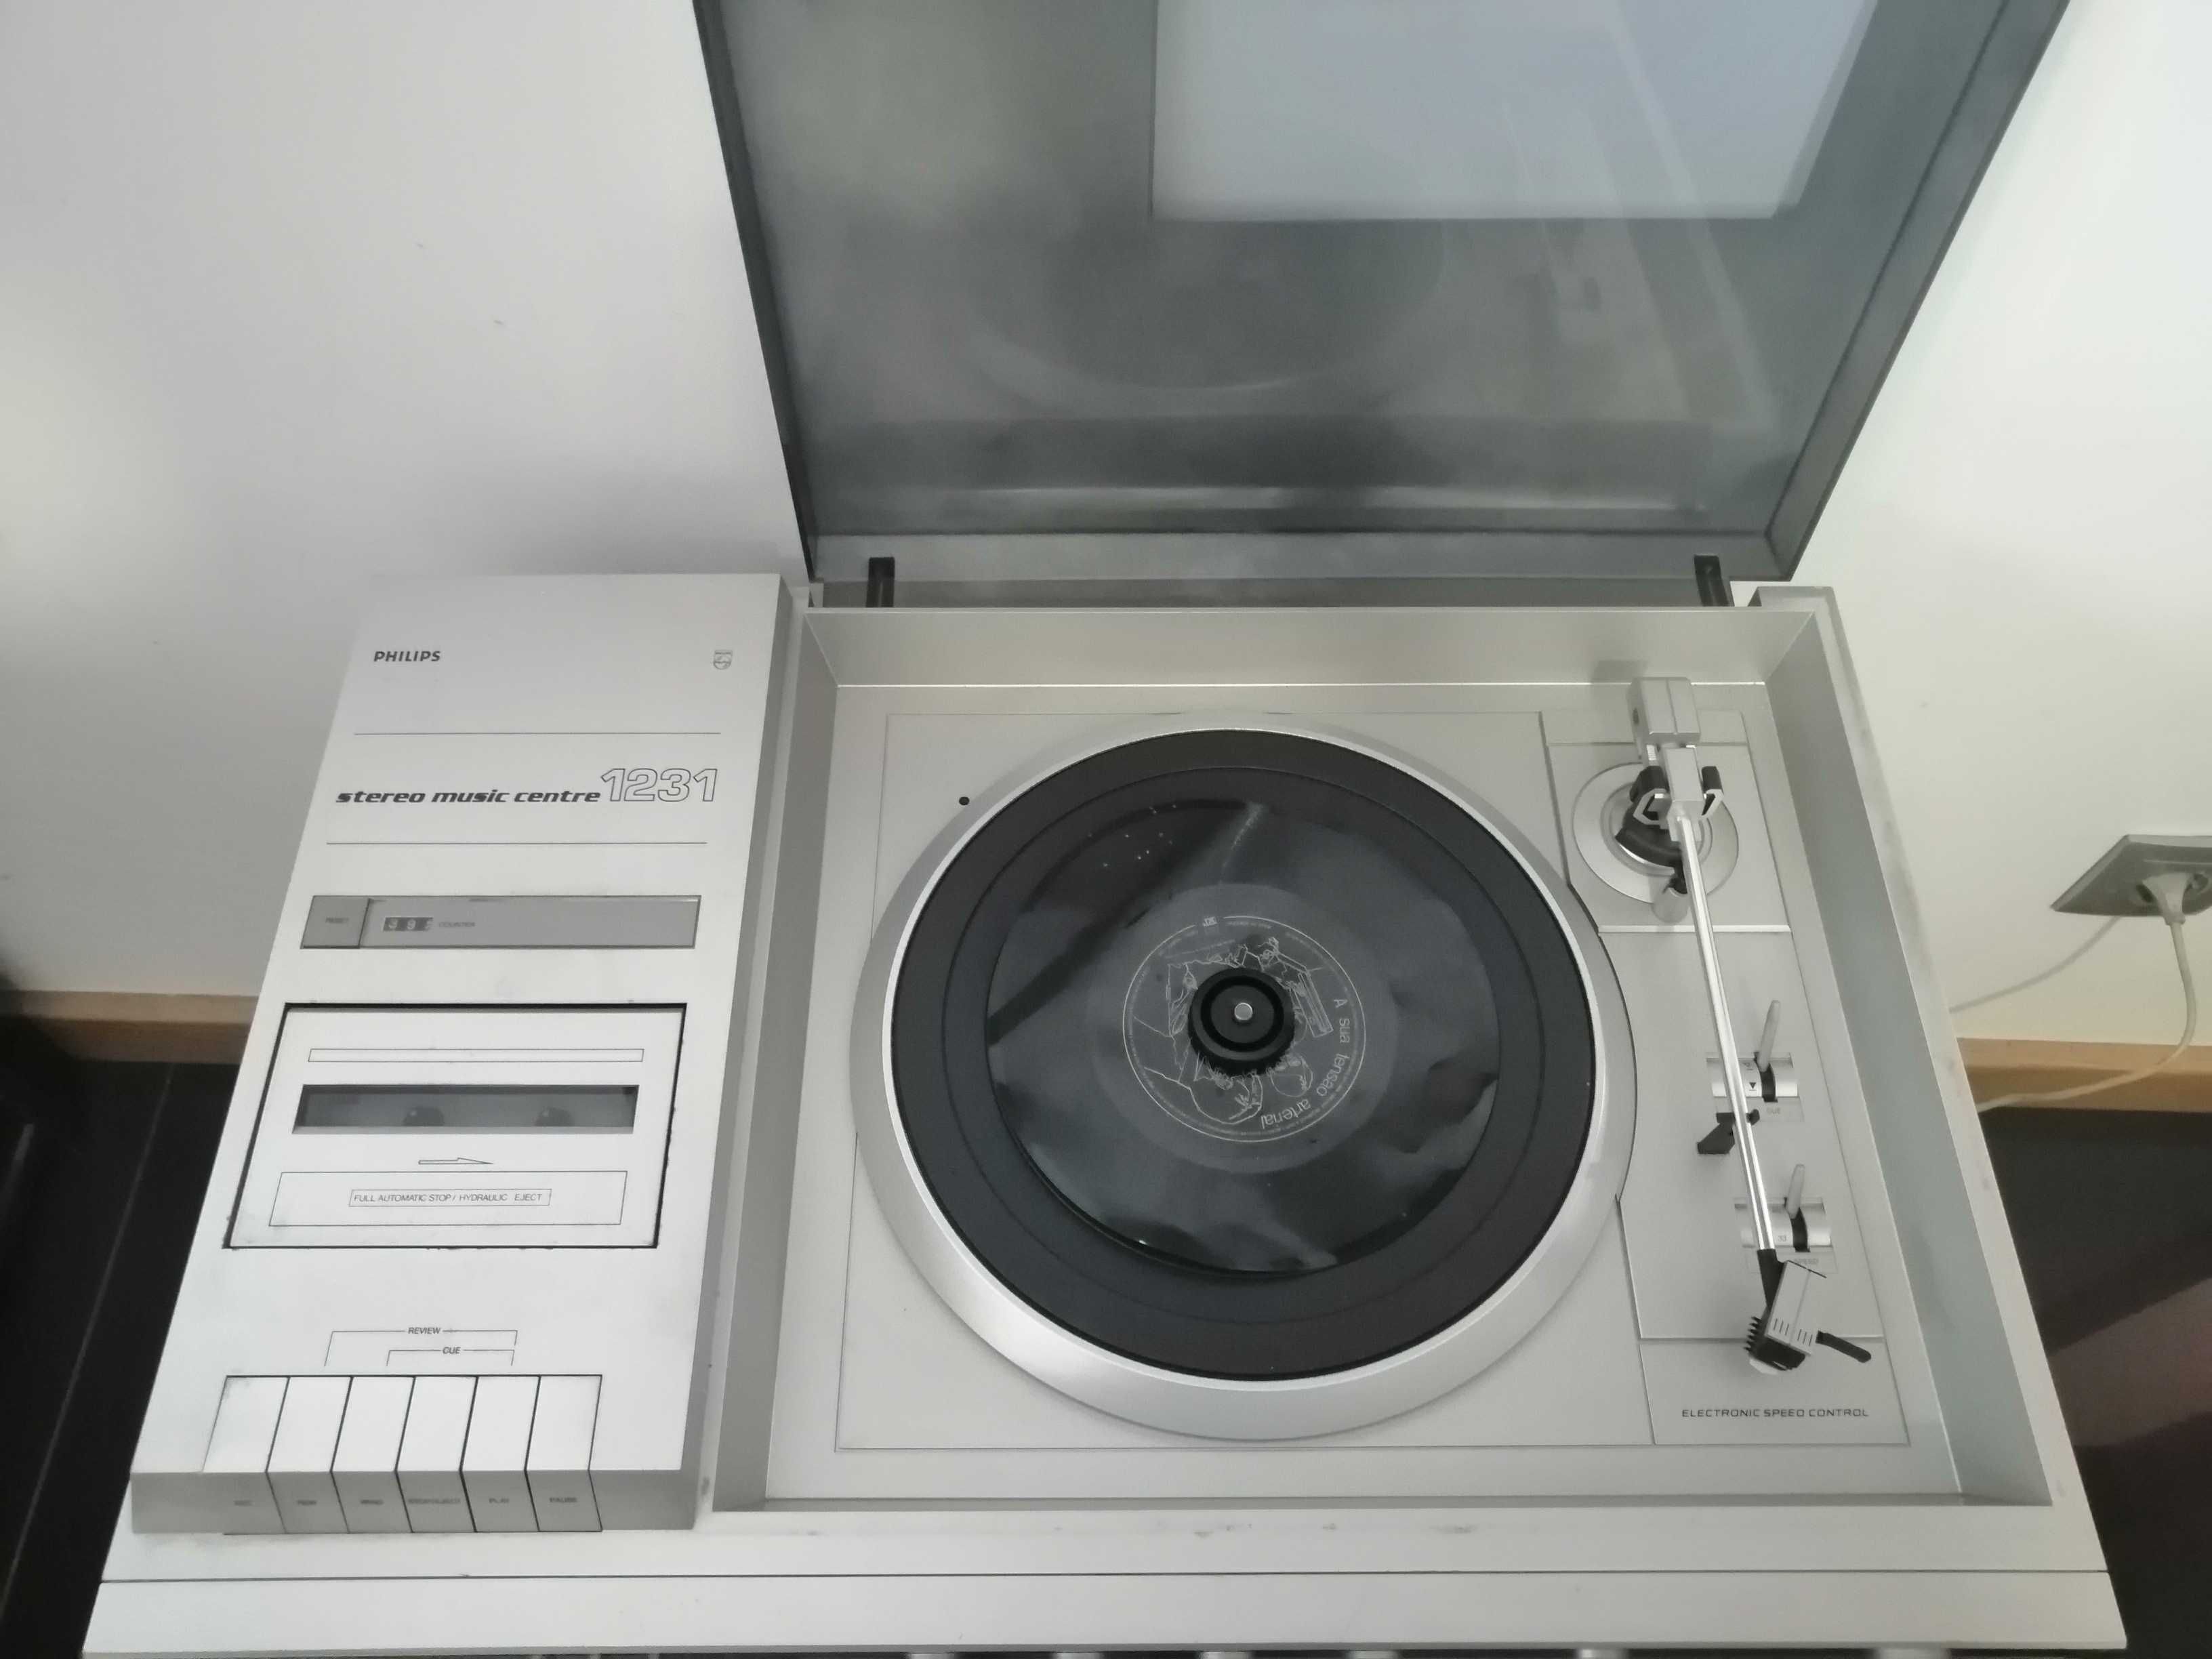 Gira-discos Vinyl Cassete Philips Stereo Music Center 1231 -  3 em 1